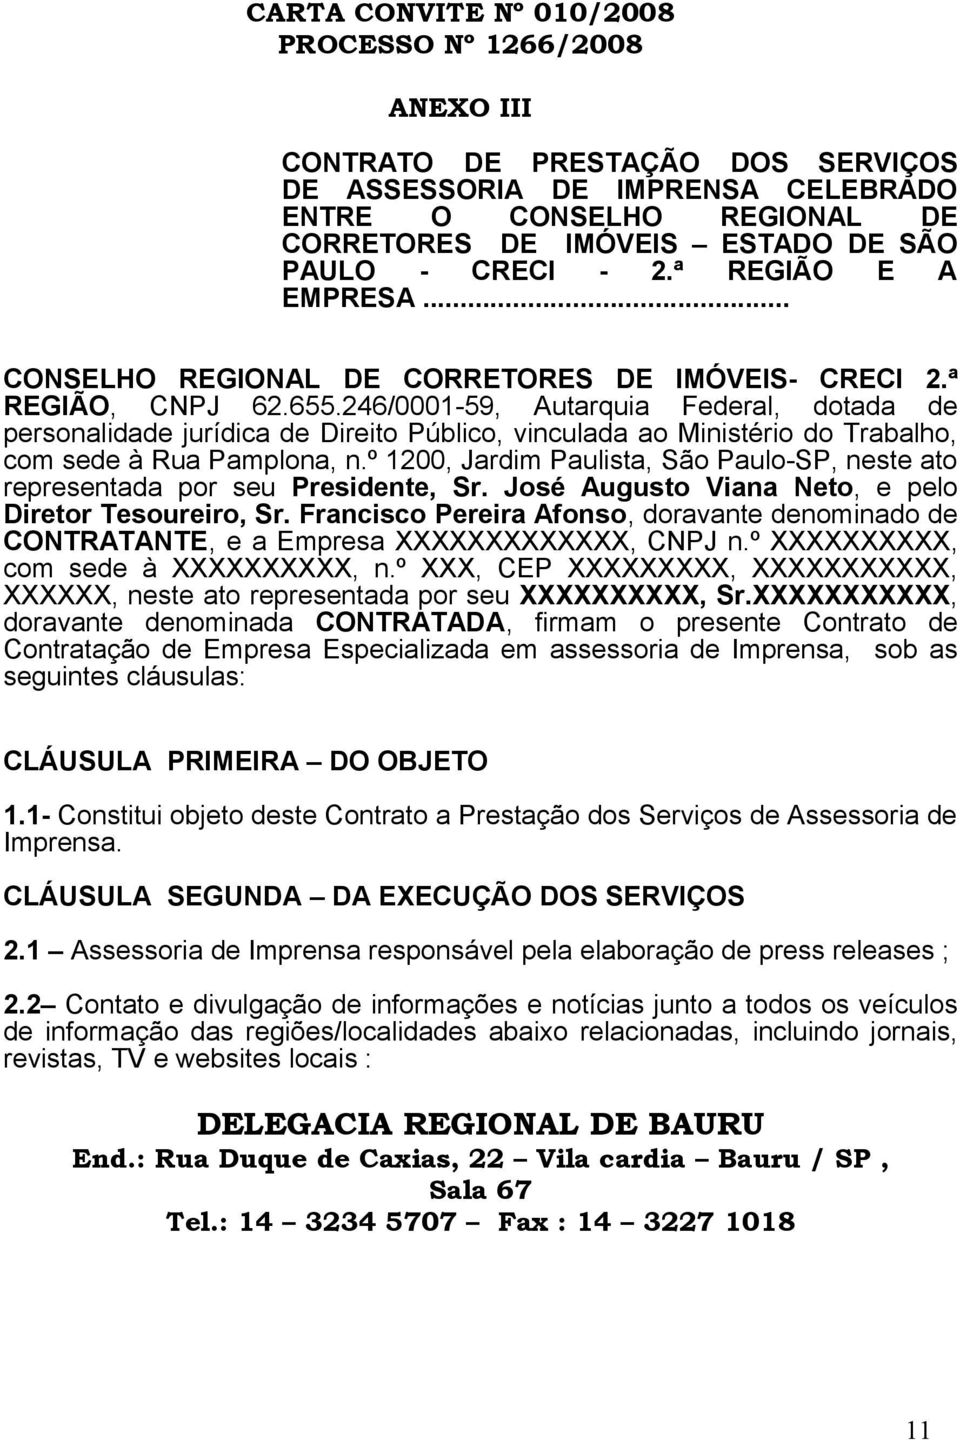 246/0001-59, Autarquia Federal, dotada de personalidade jurídica de Direito Público, vinculada ao Ministério do Trabalho, com sede à Rua Pamplona, n.